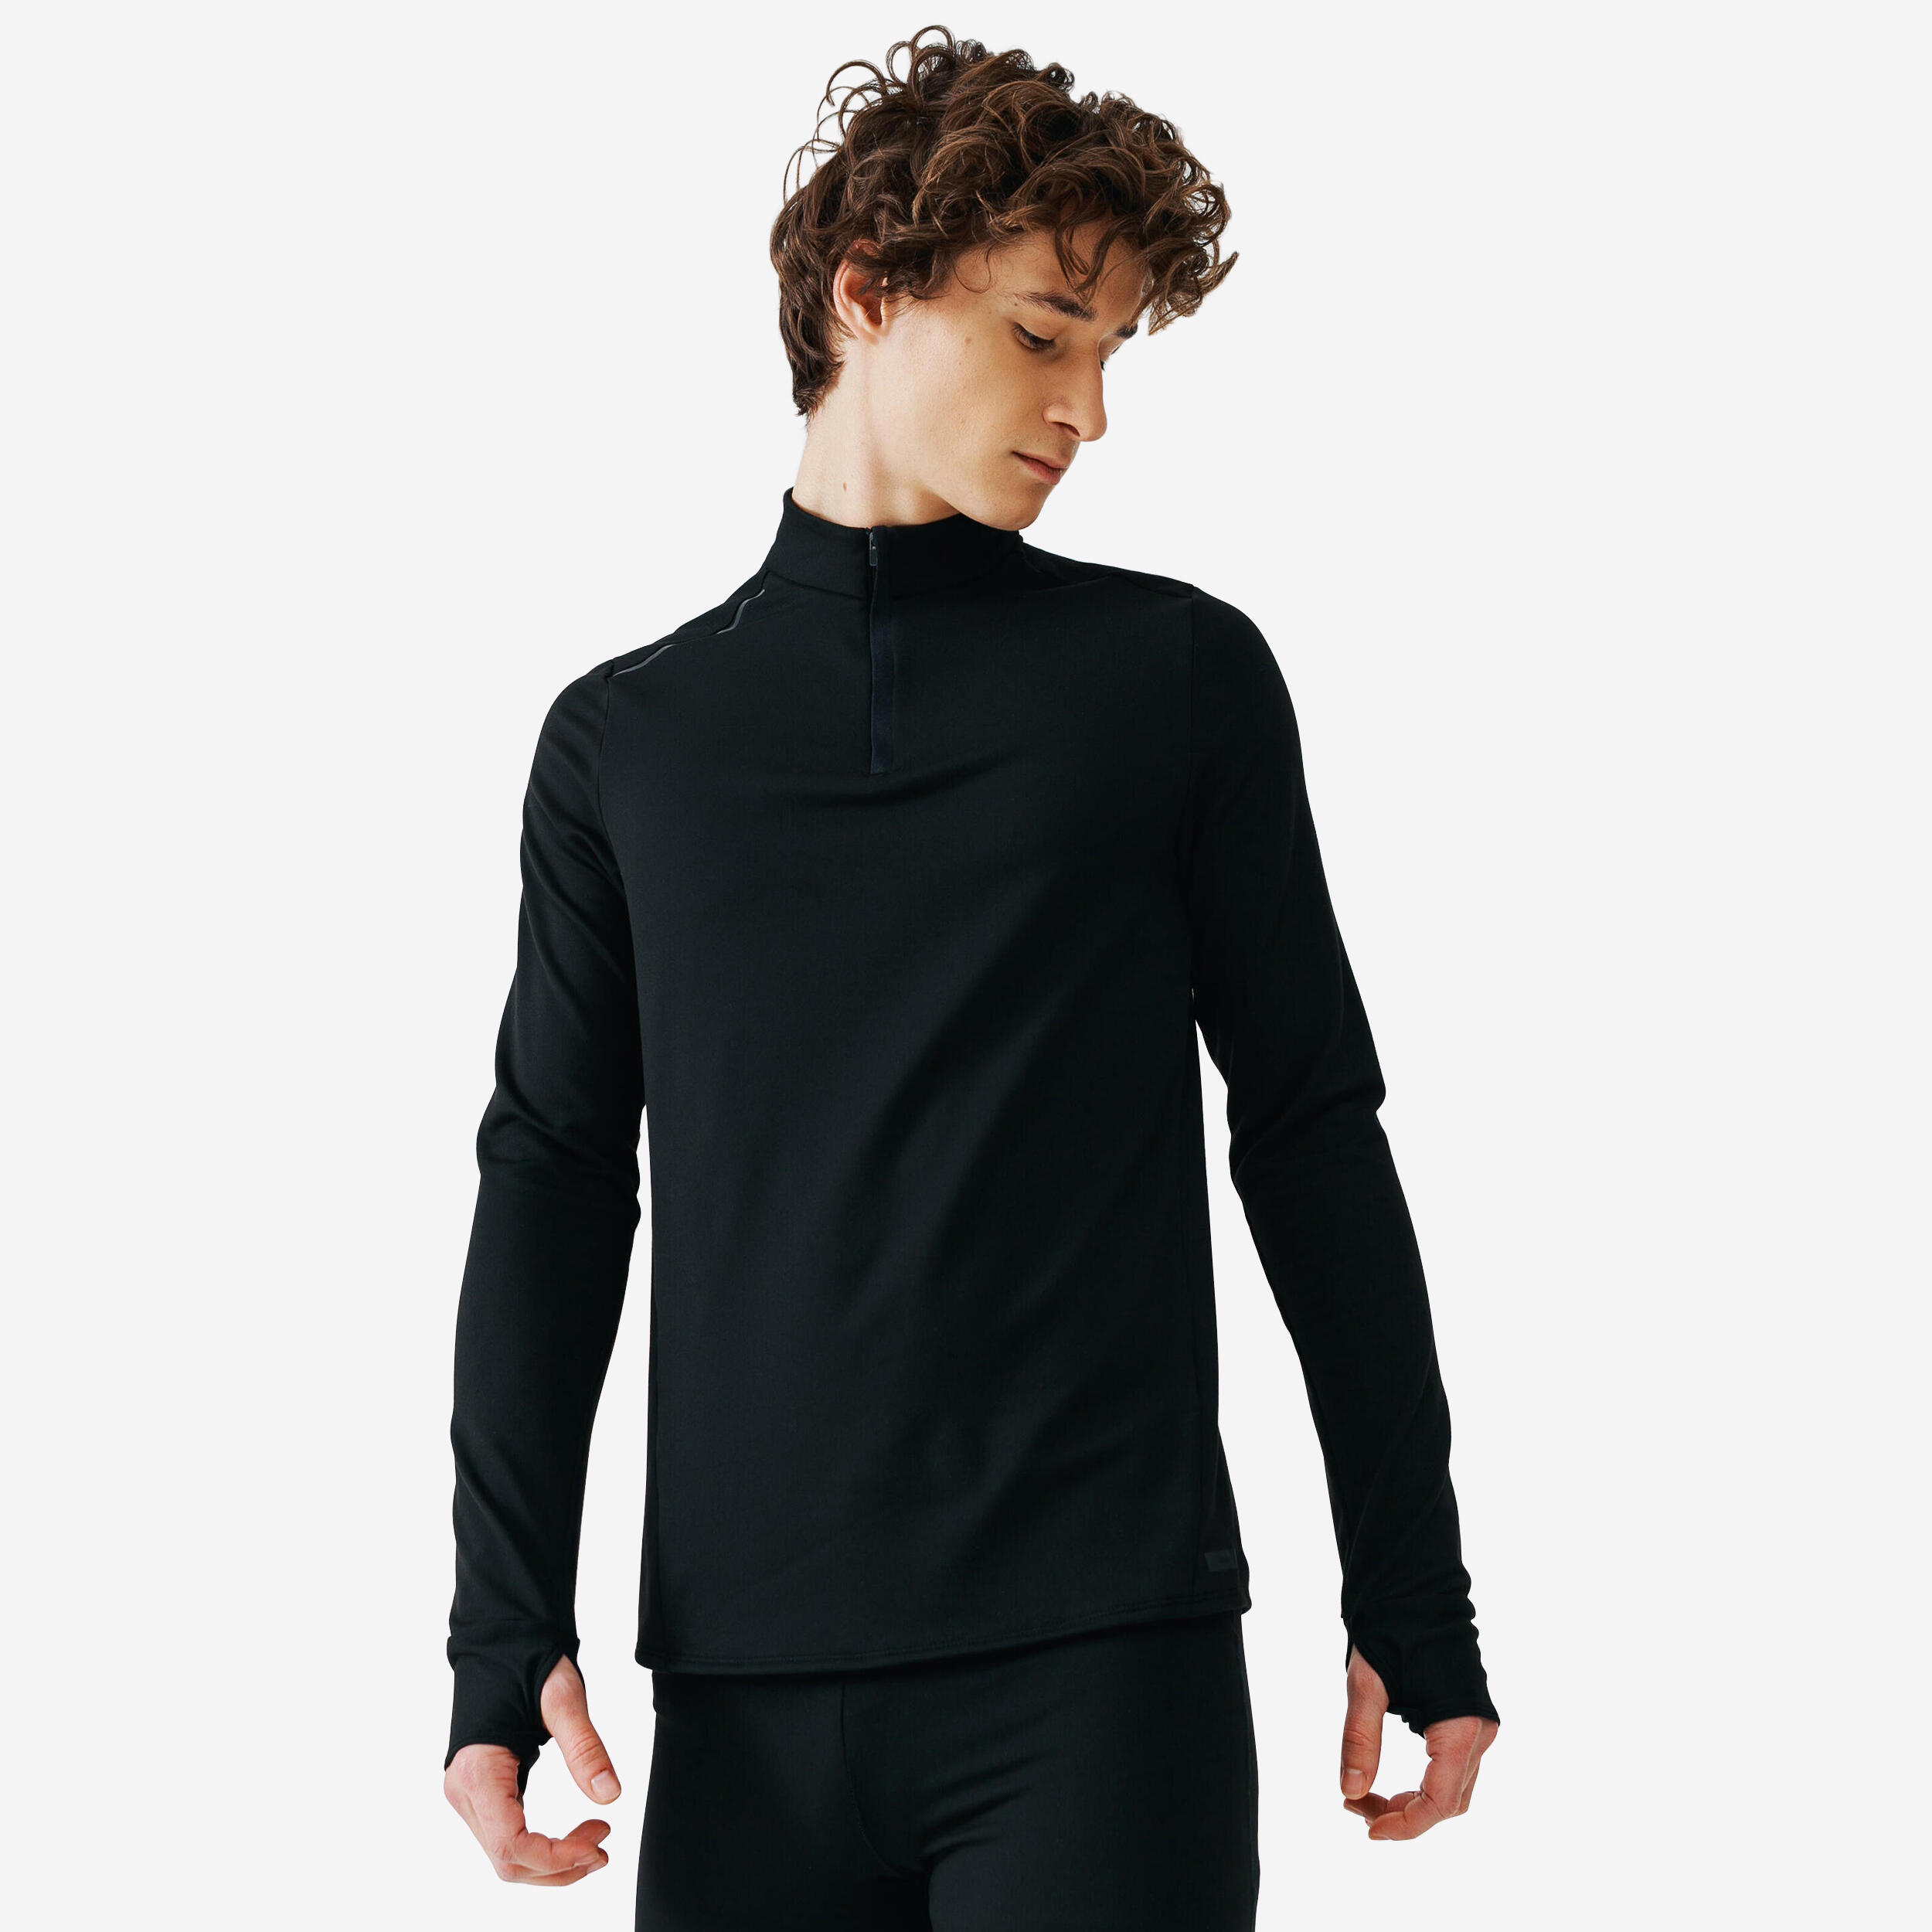 Men's Long-Sleeved Running Shirt - Black